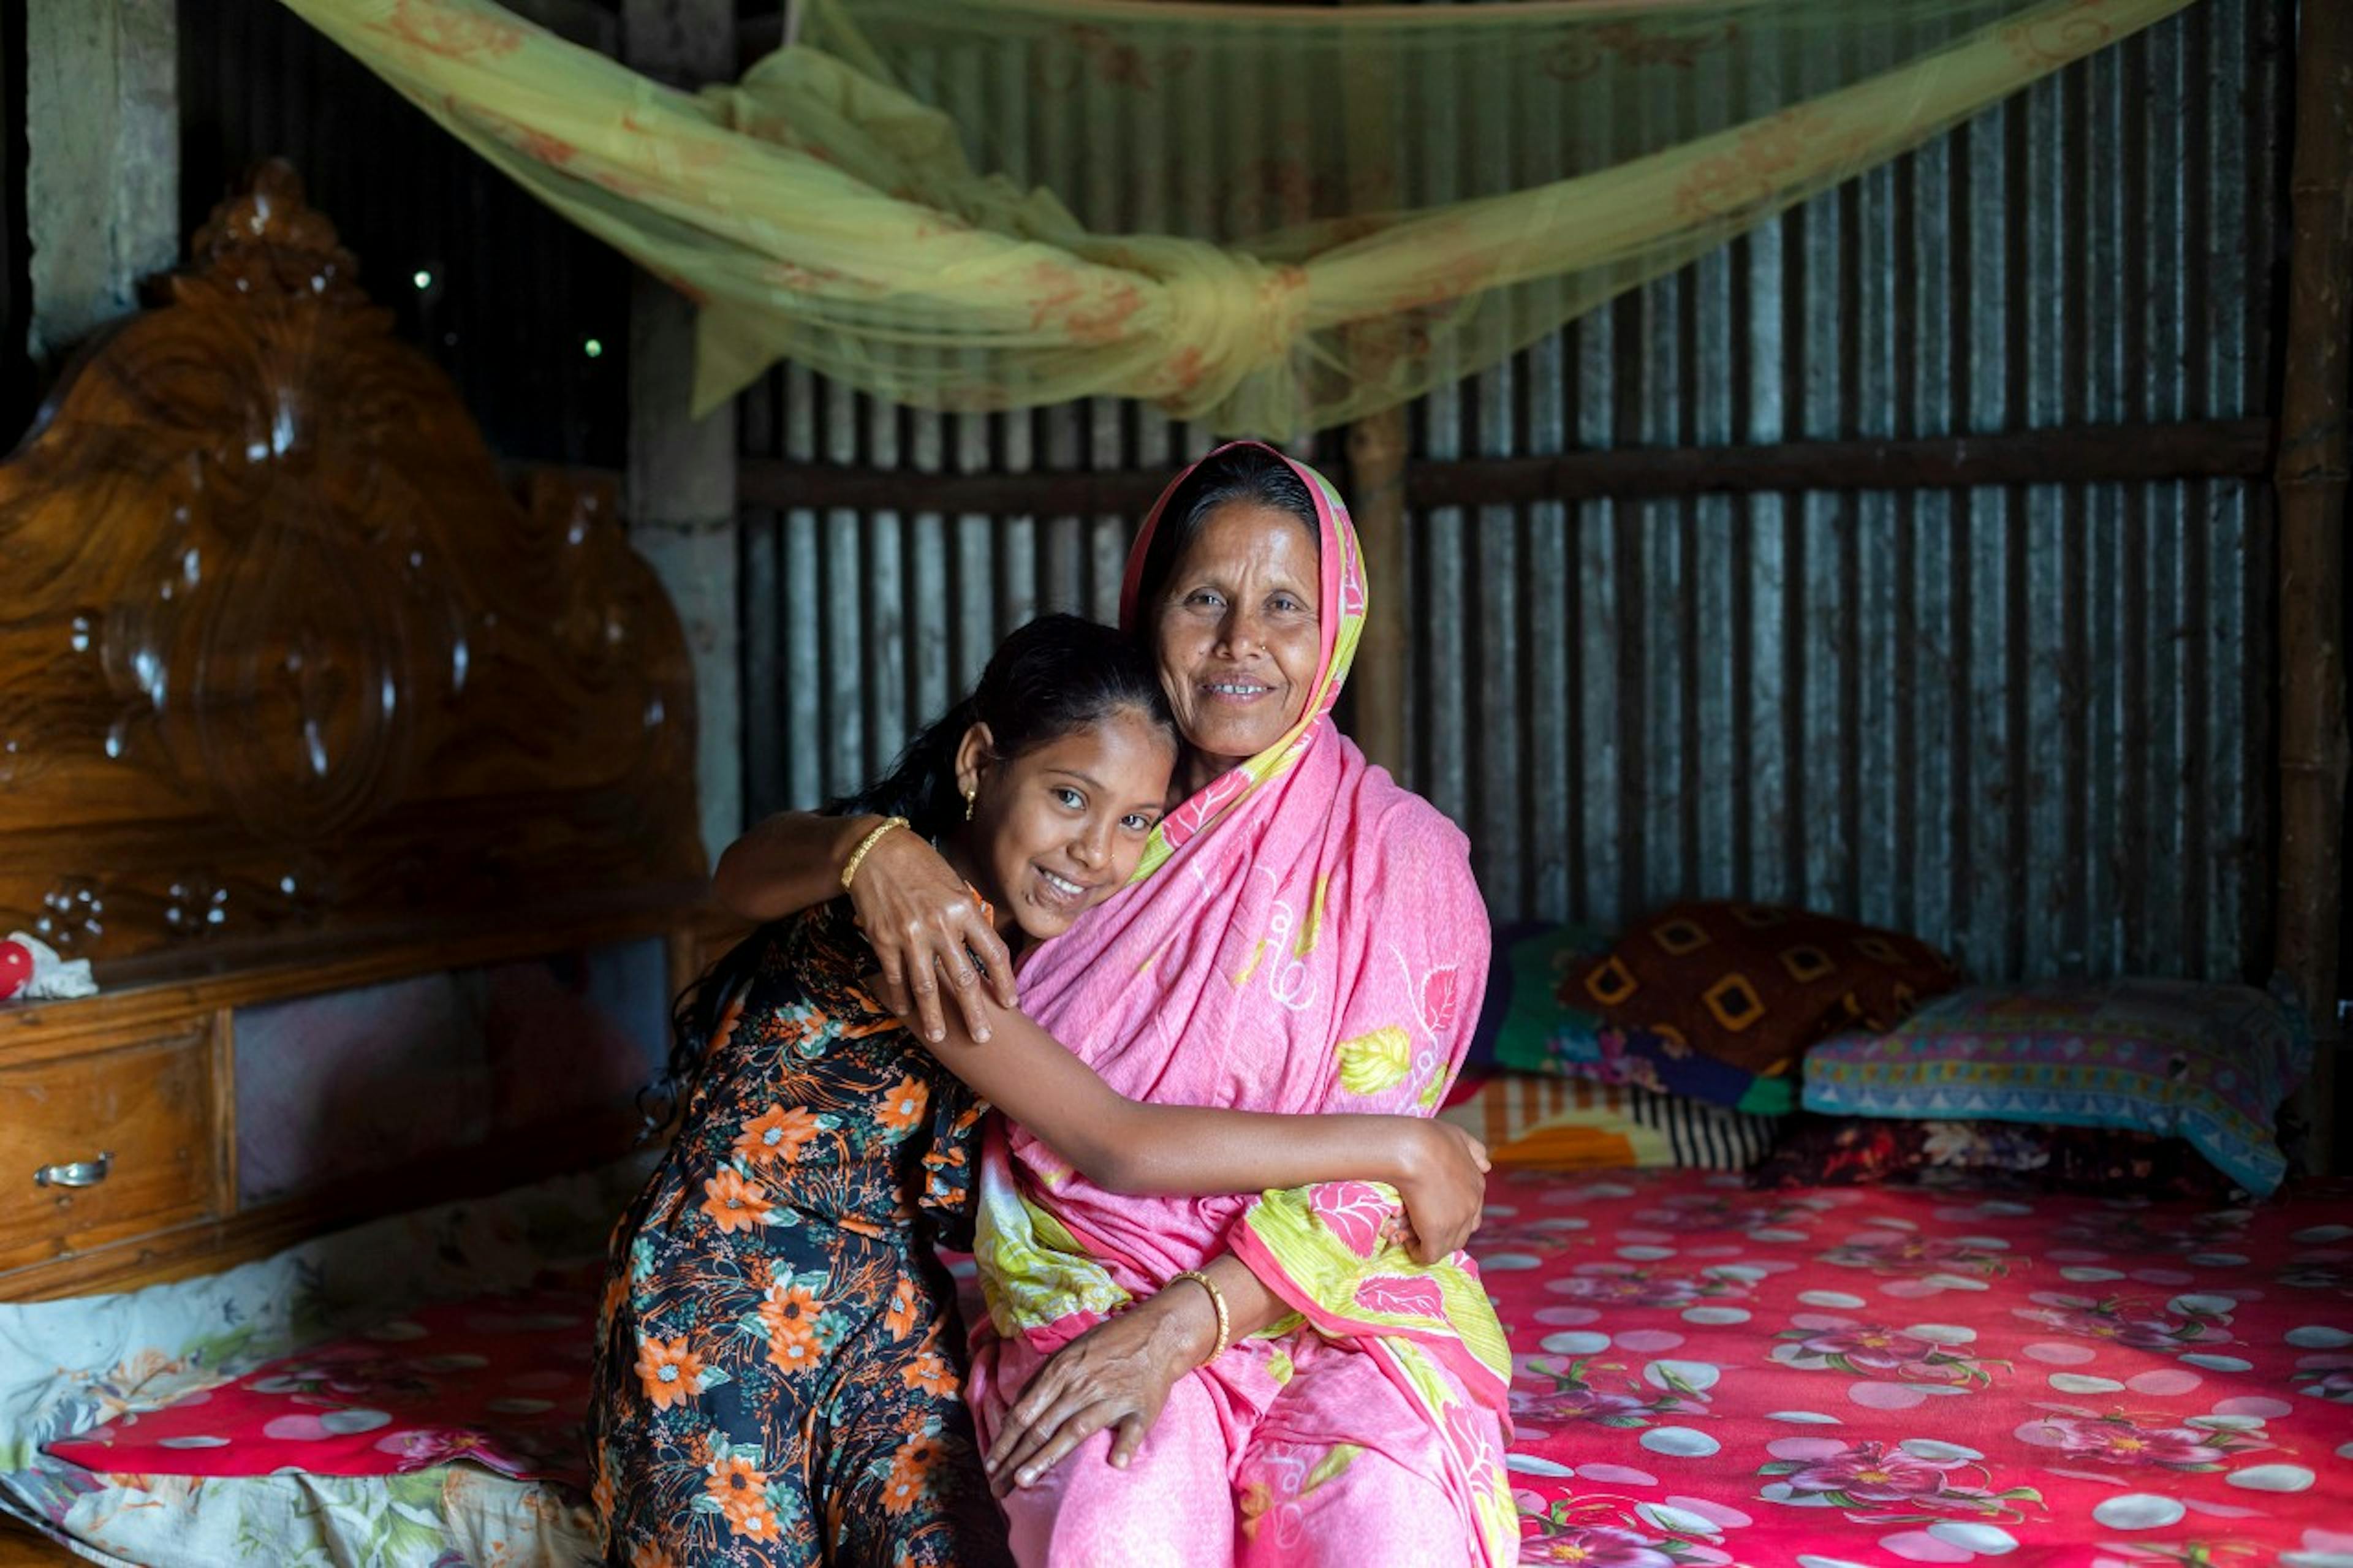 Il bel rapporto tra madre e figlia si riflette in questa foto, dove Shohana e la madre Ambia Khatun si abbracciano. Sono nella loro casa a Mymensingh, in Bangladesh